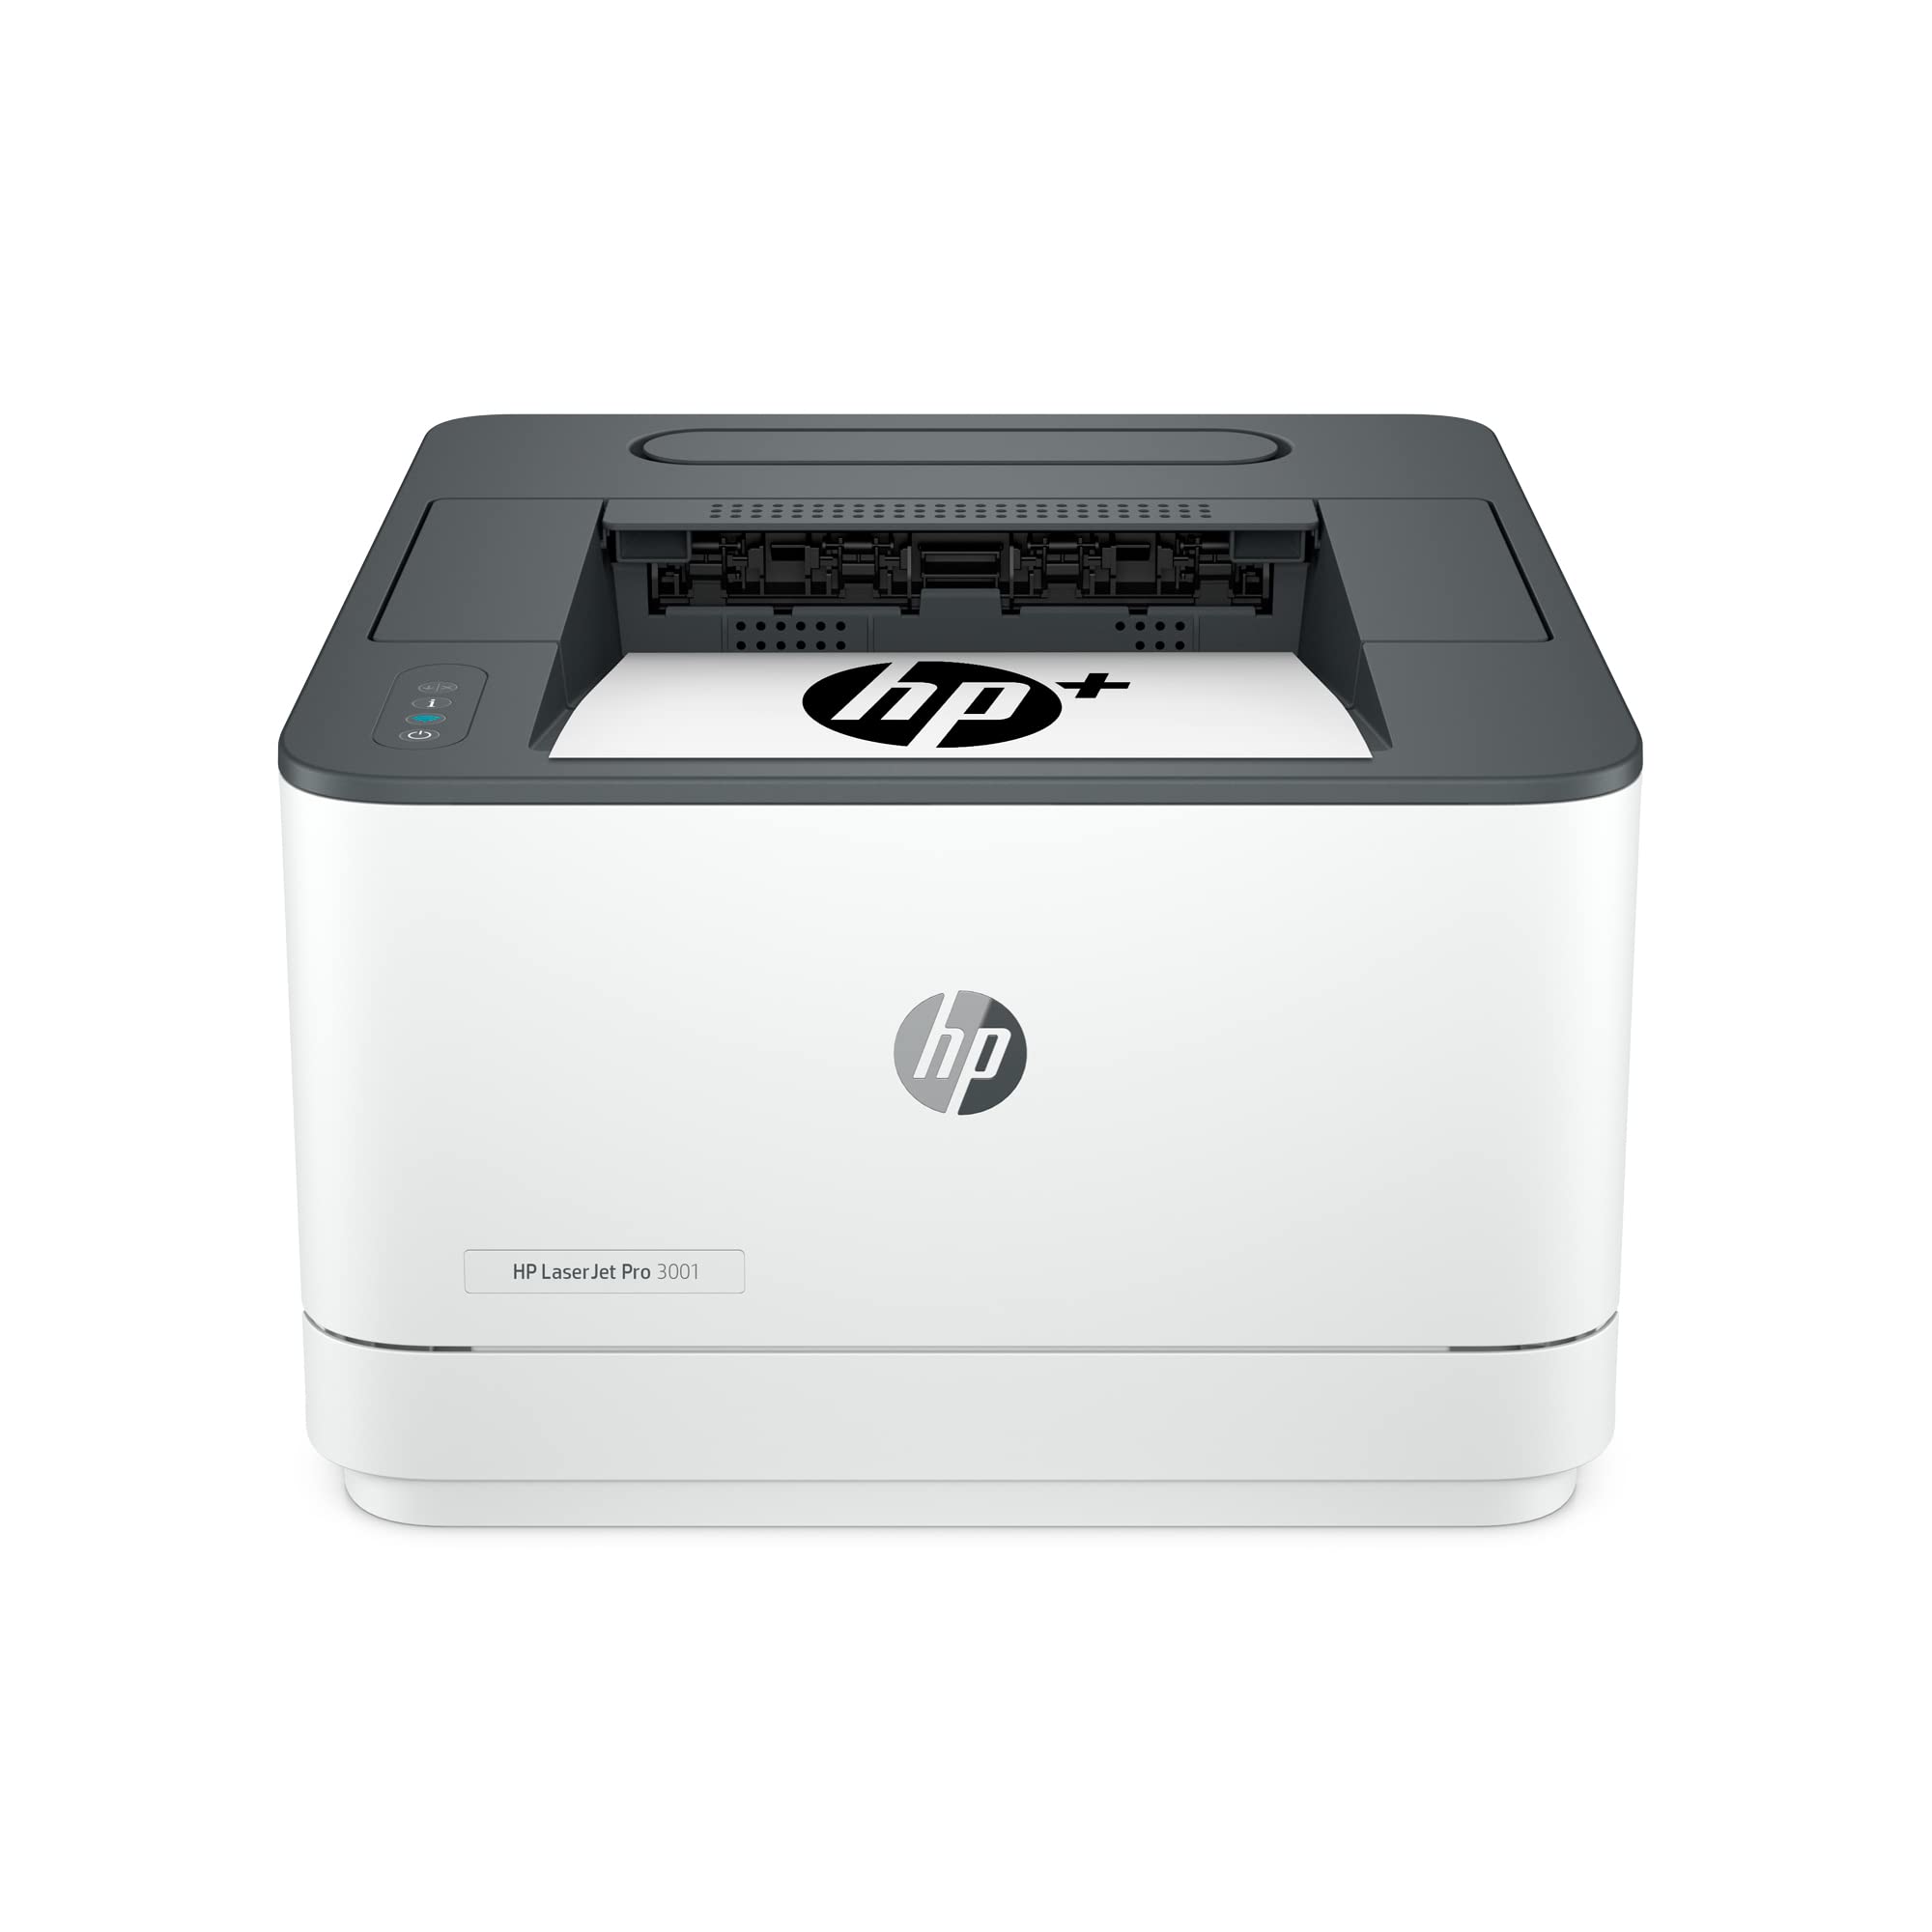 HP LaserJet Pro 3001dwe Wireless Black & White Printer ...